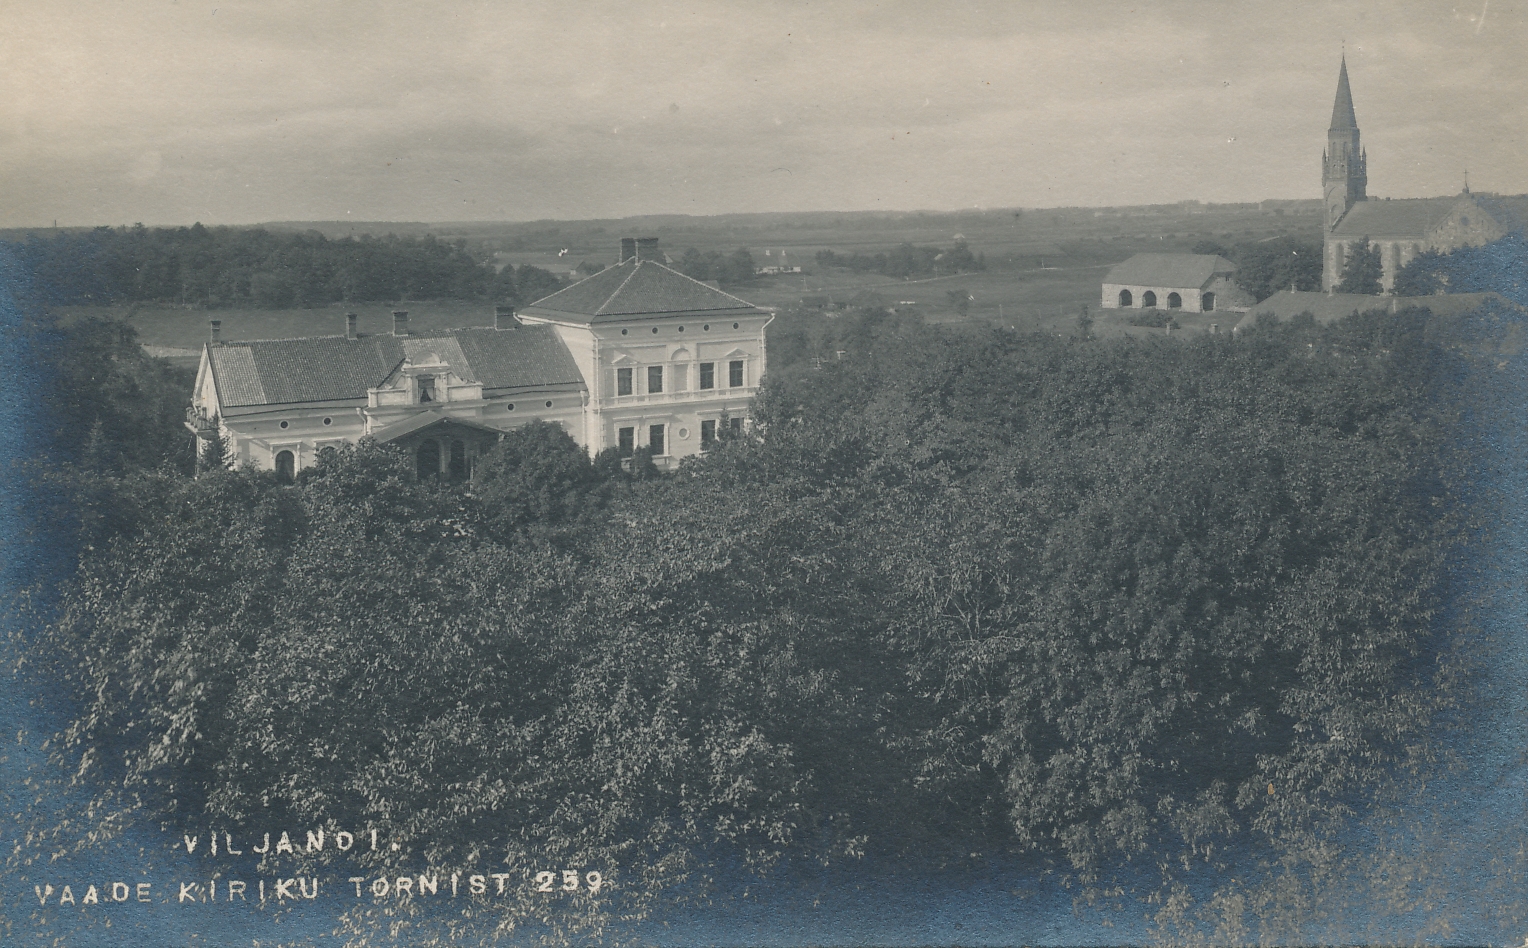 foto, Viljandi, vaade Jaani kiriku tornist mõisa ja Pauluse kiriku poole, u 1910, foto J. Riet